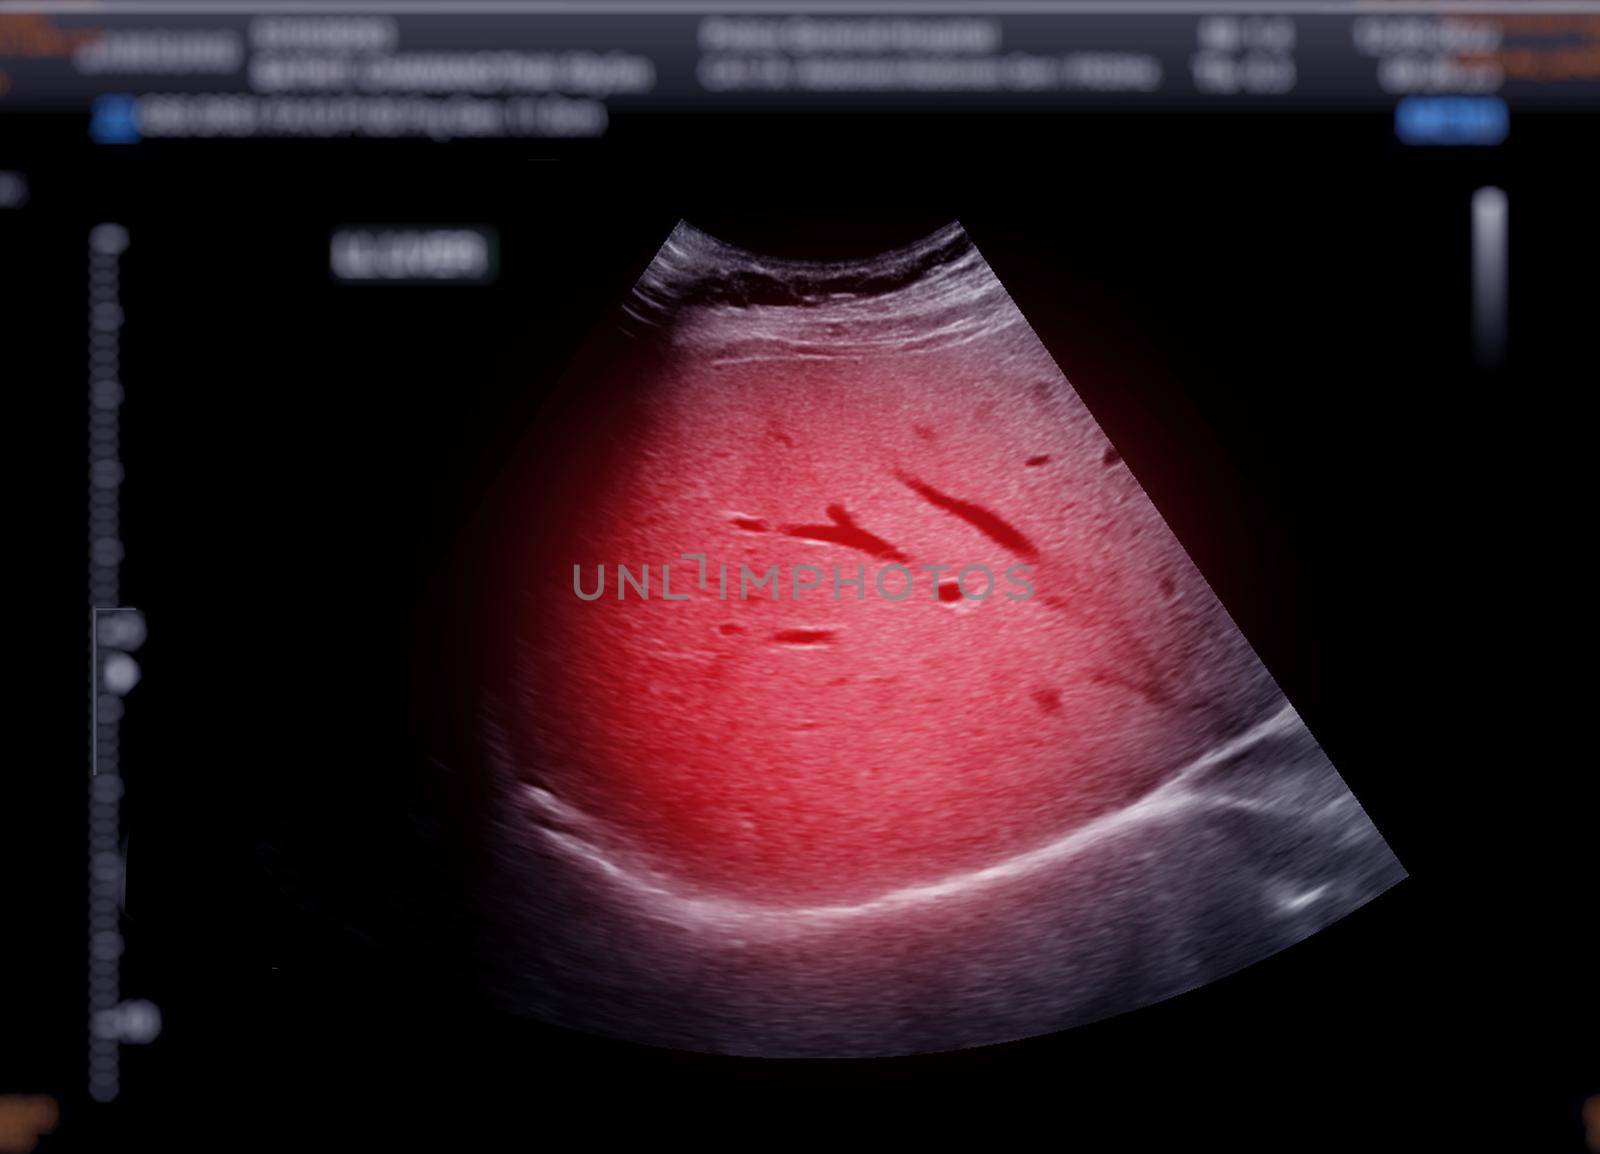 Ultrasound upper abdomen showing liver.